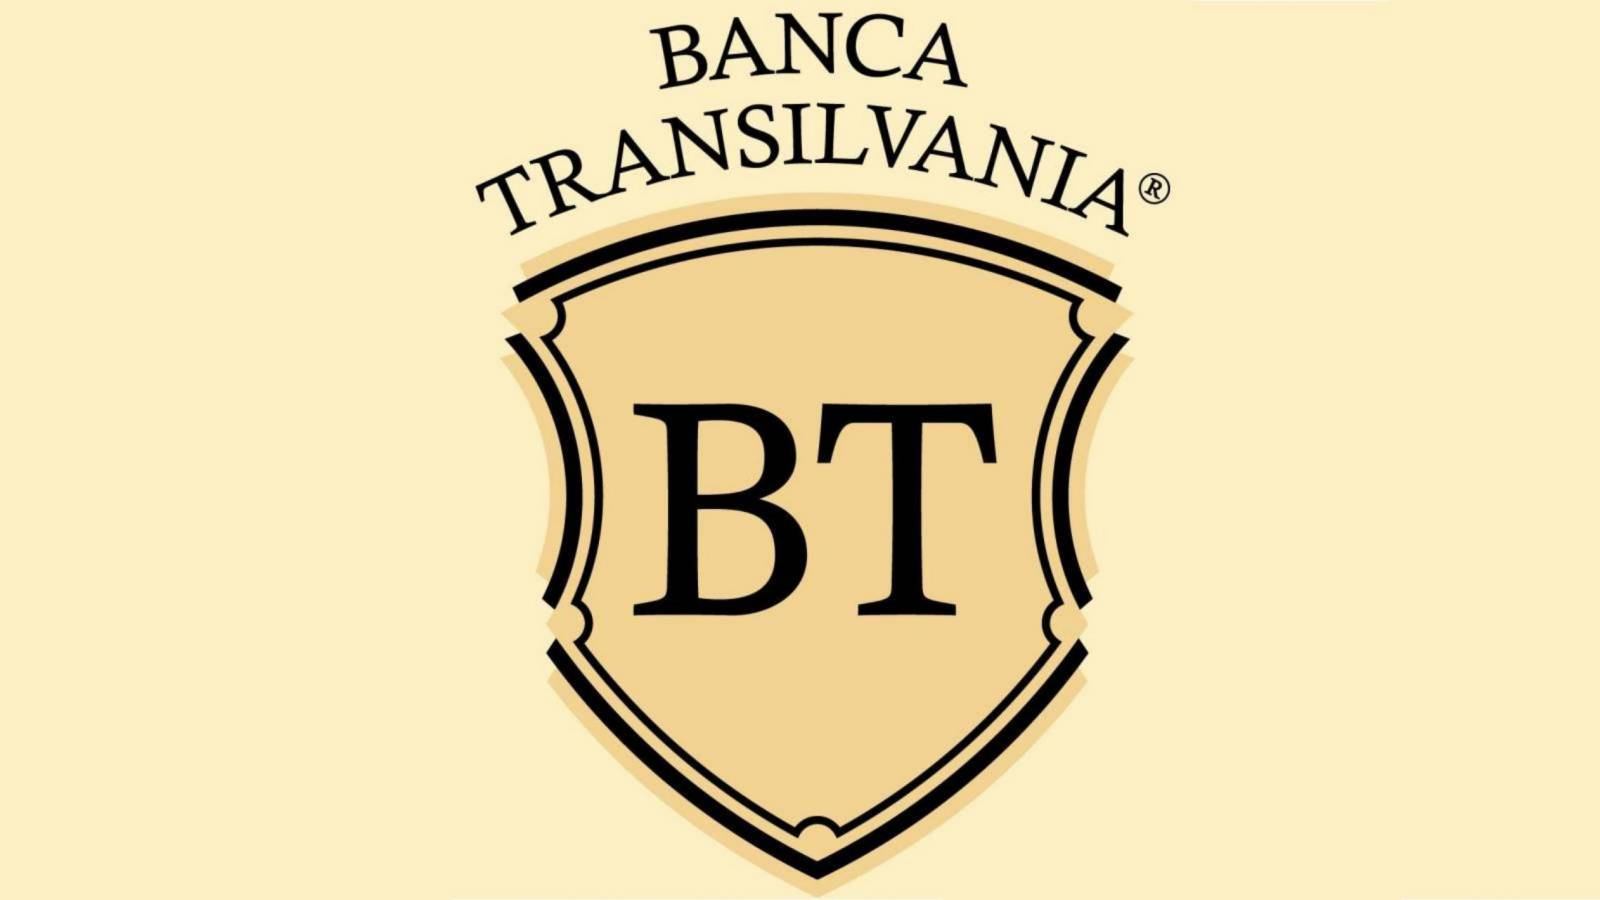 BANCA Transilvania sundhed